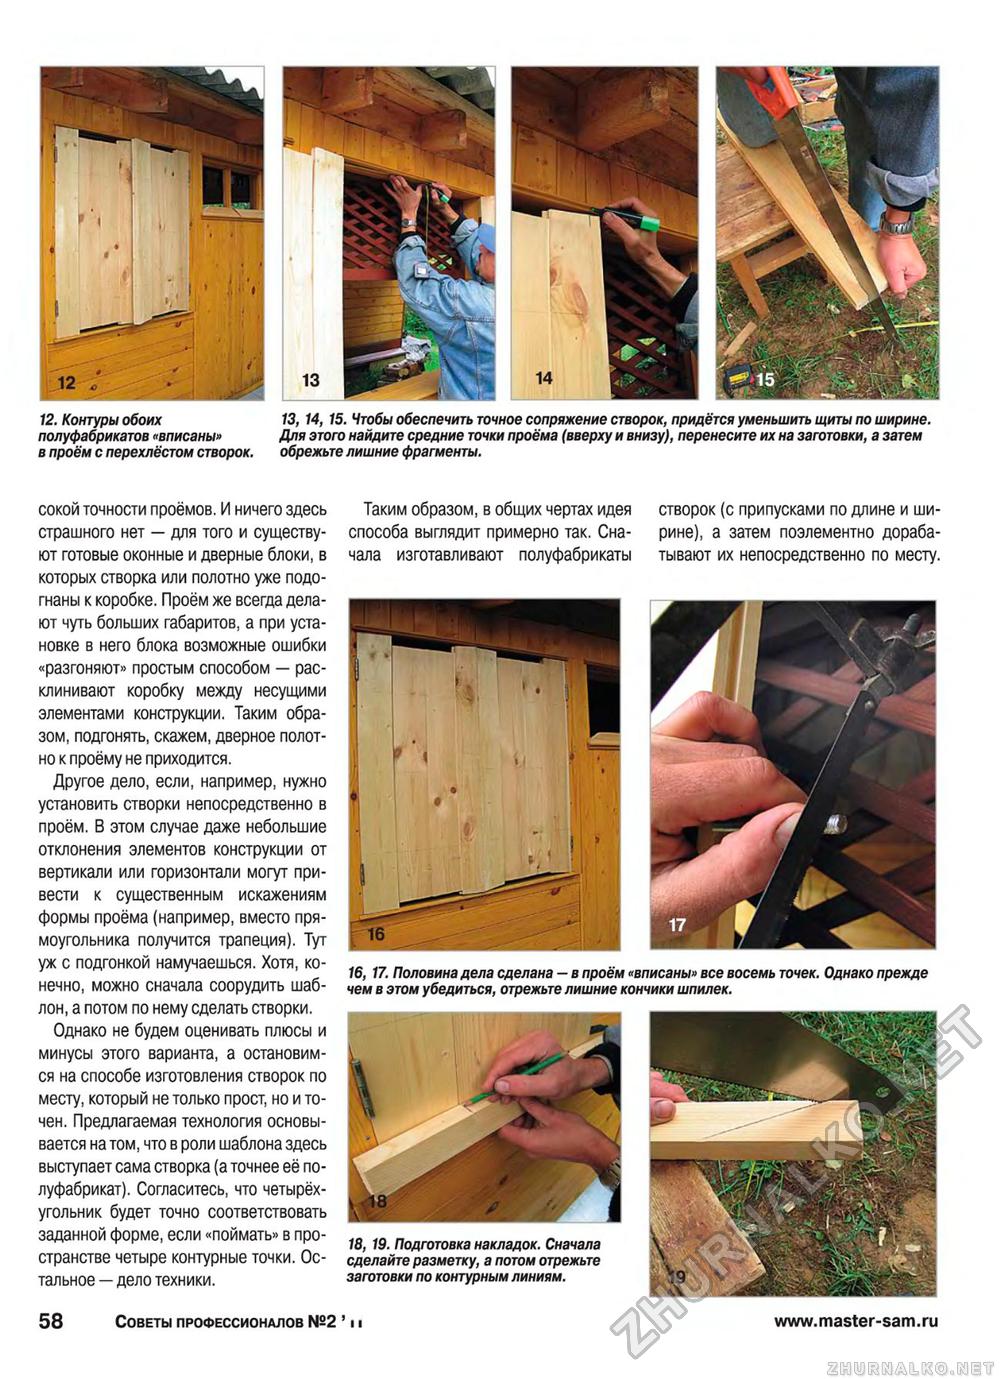 Советы профессионалов 2011-02, страница 58